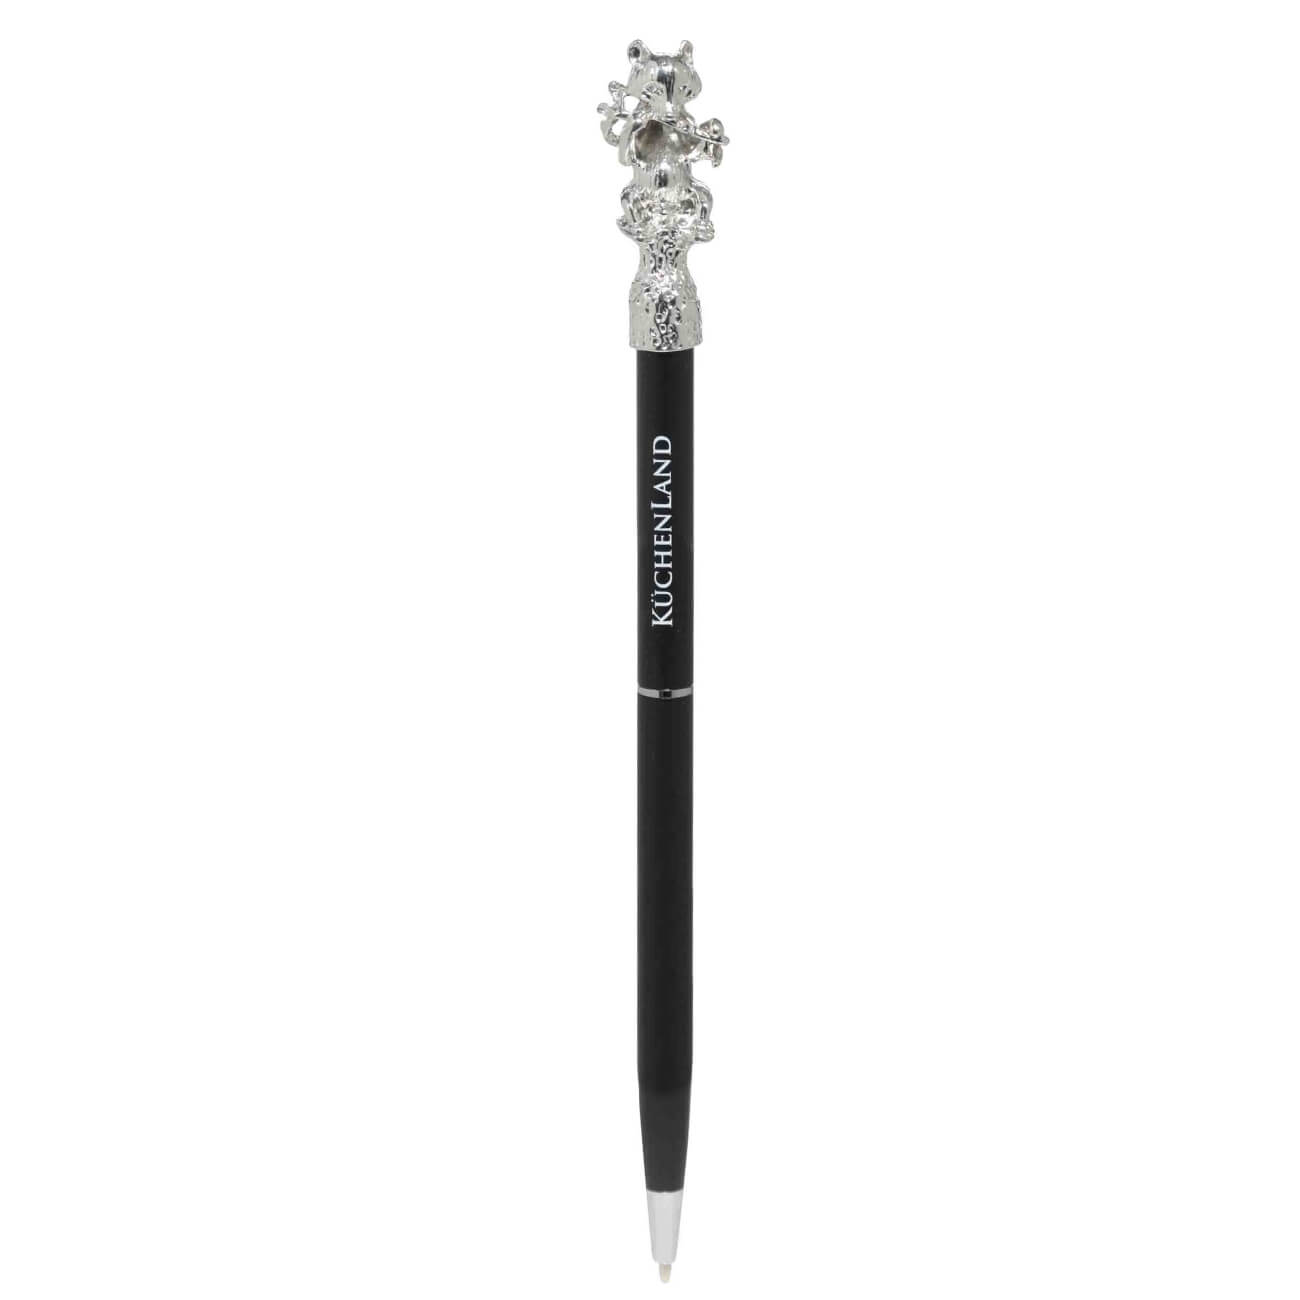 Ручка шариковая, 16 см, с фигуркой, сталь, черная, Панда, Draw figure ручка шариковая 14 см с фигуркой серебристая заяц draw figure